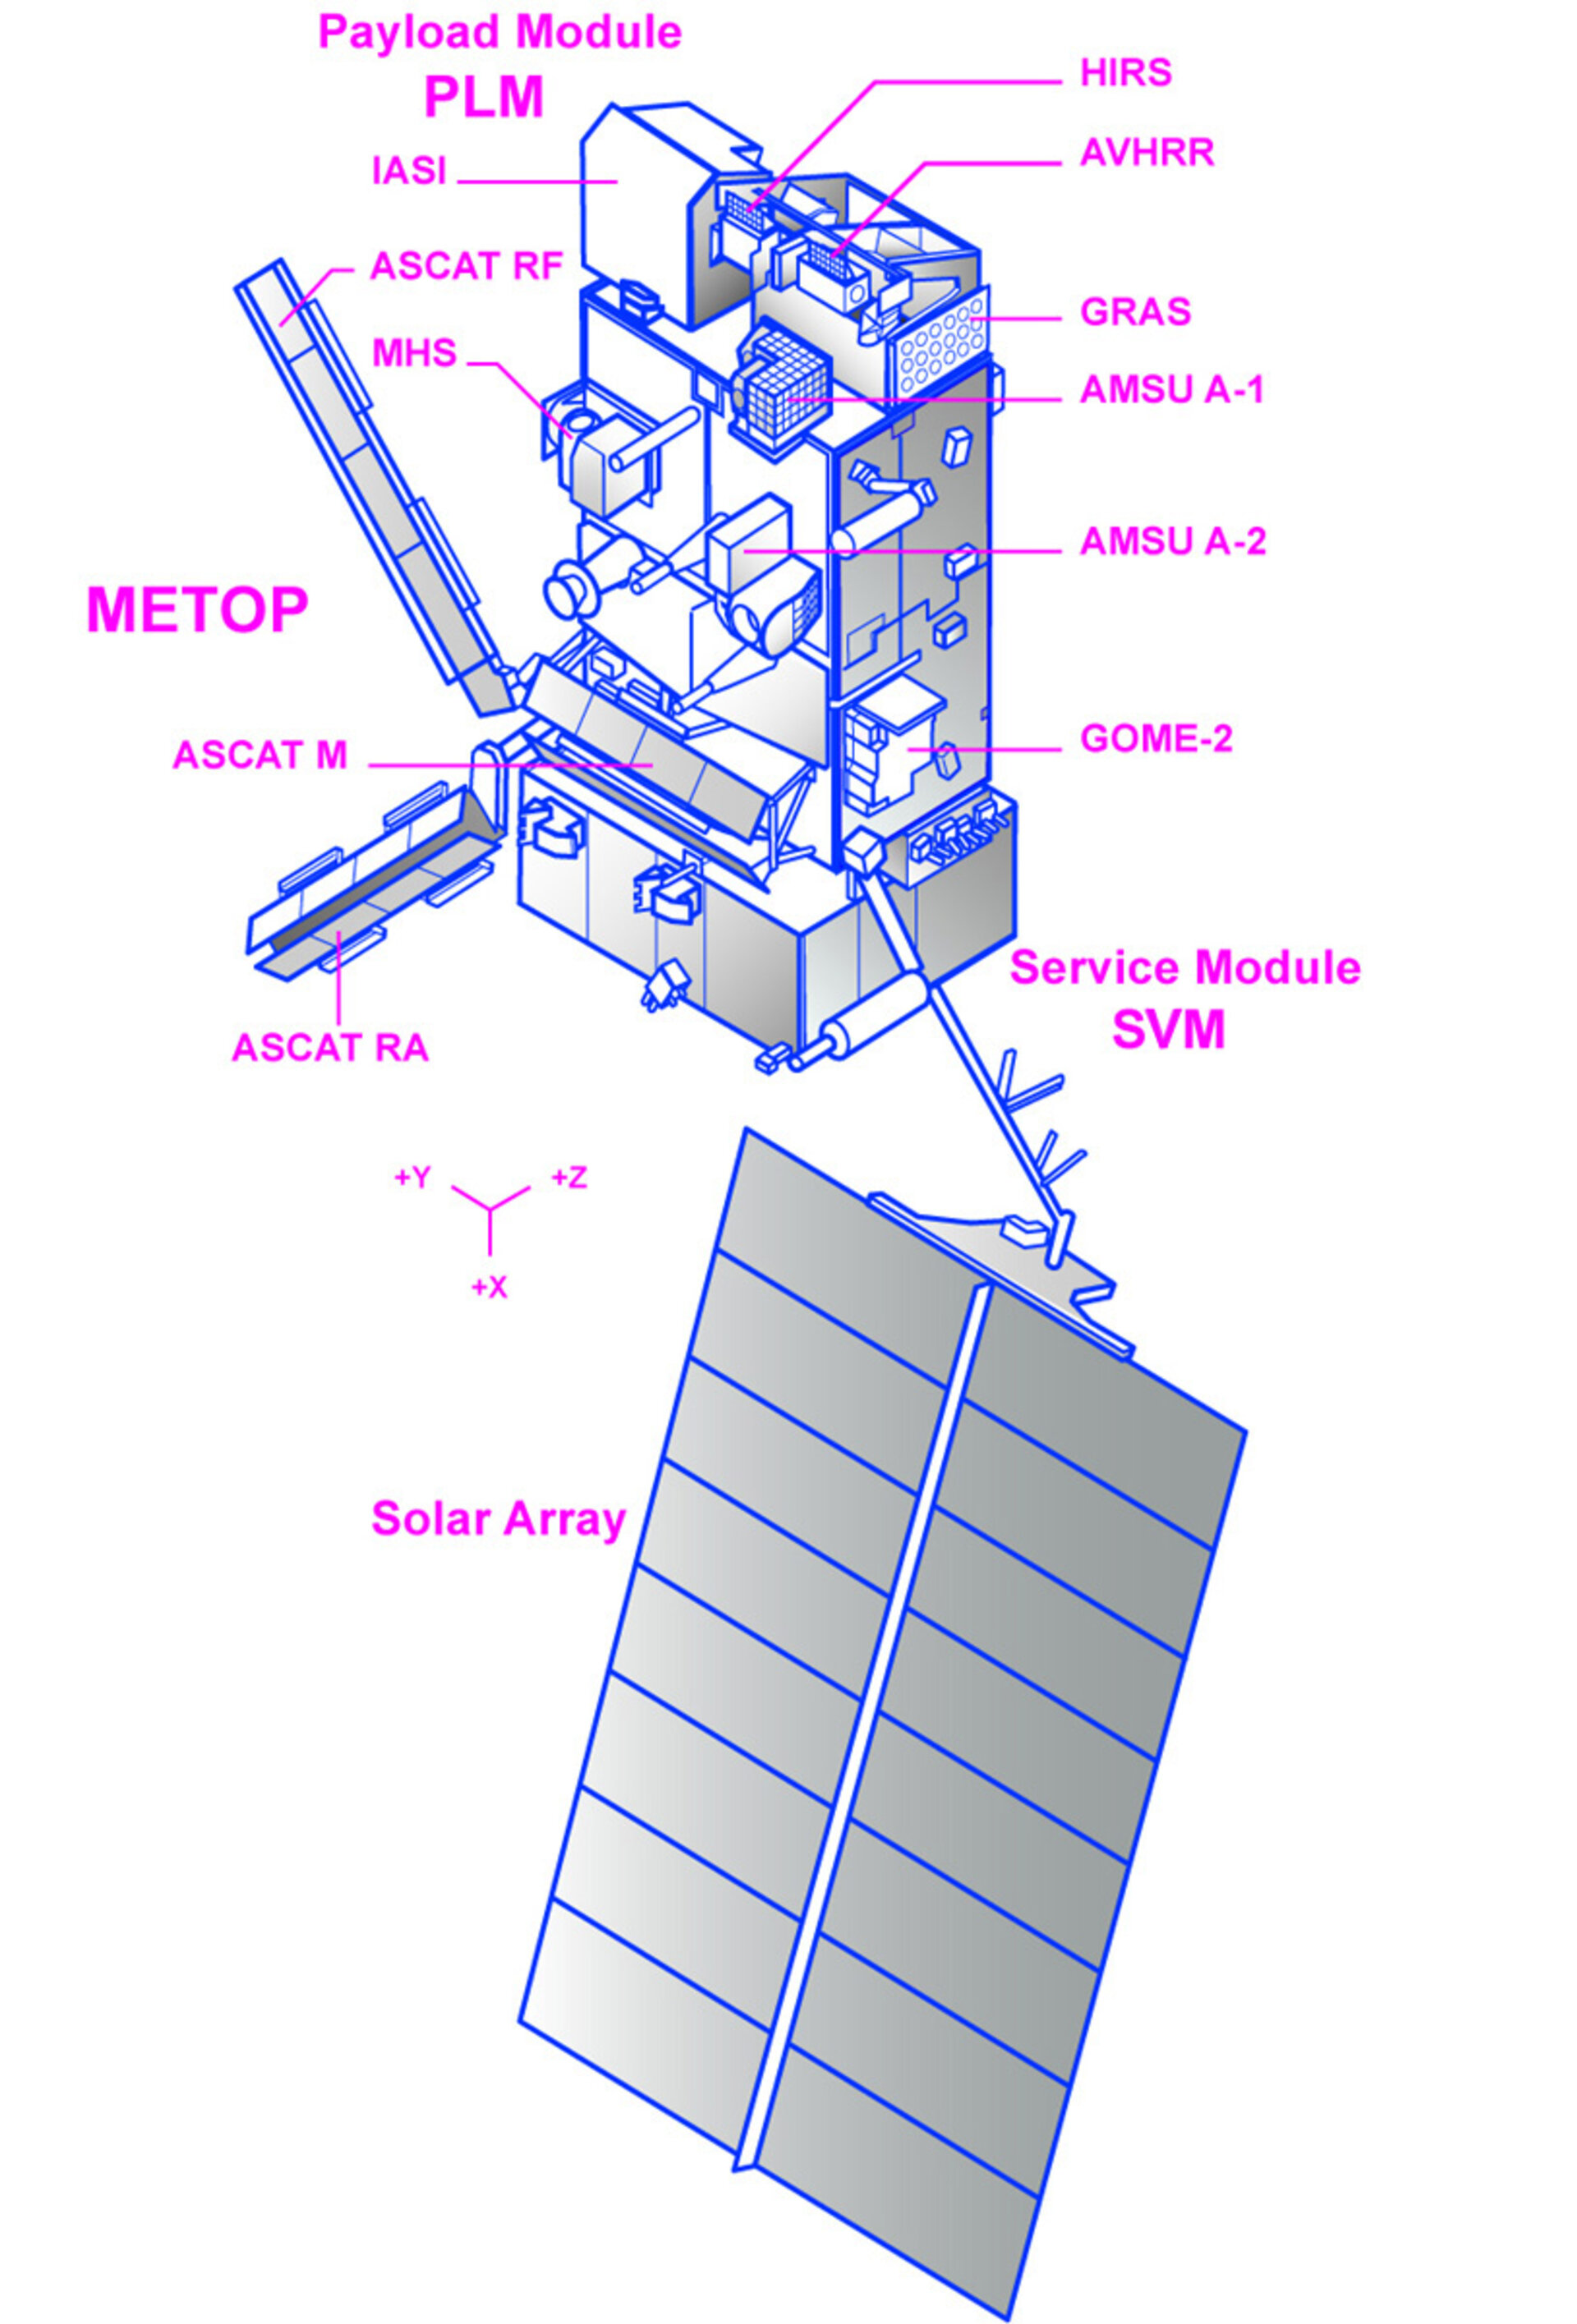 Satellite in orbit configuration